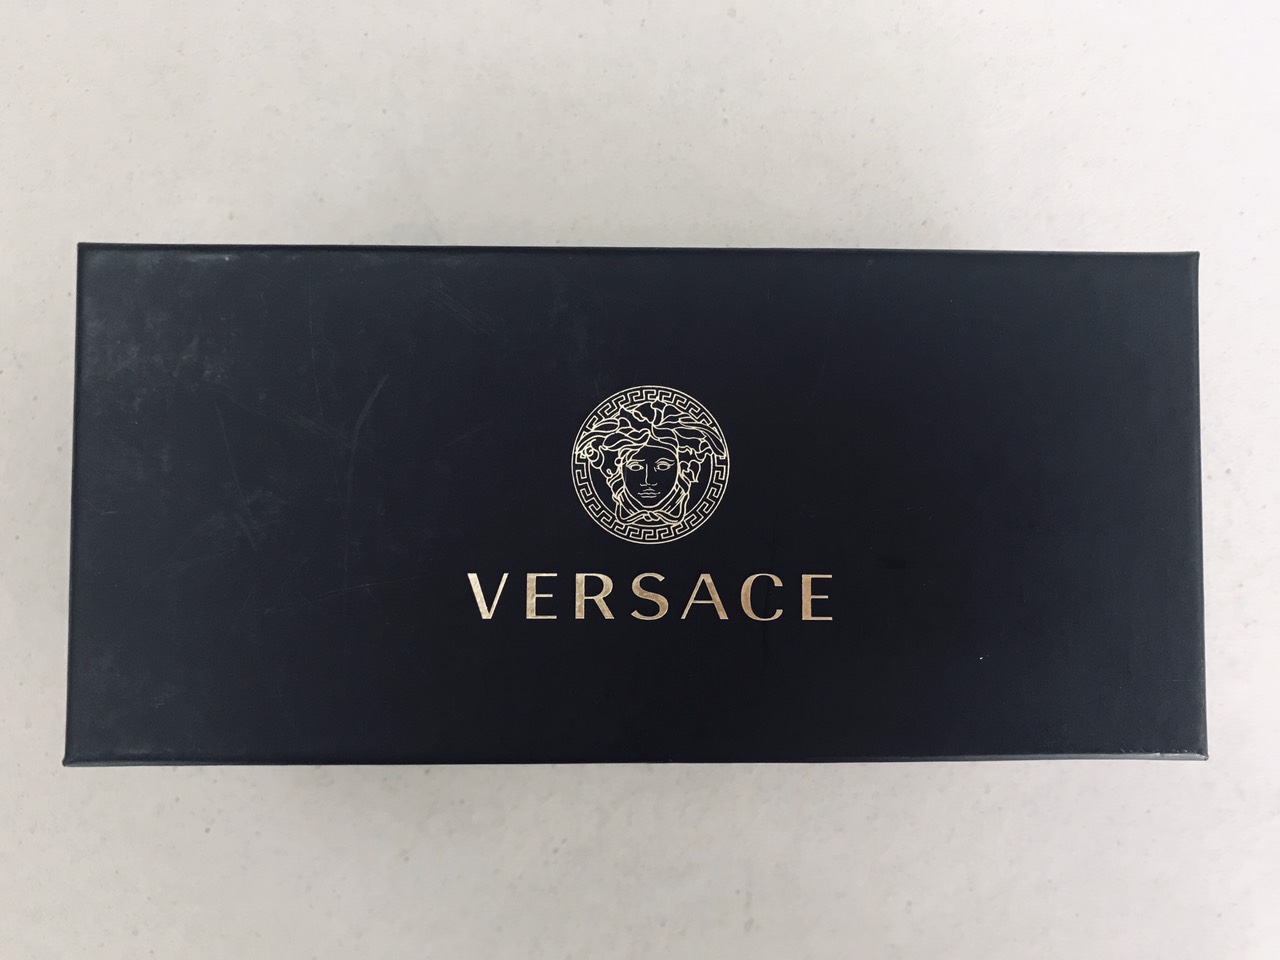 Hộp đựng sản phẩm kính Versace chính hãng